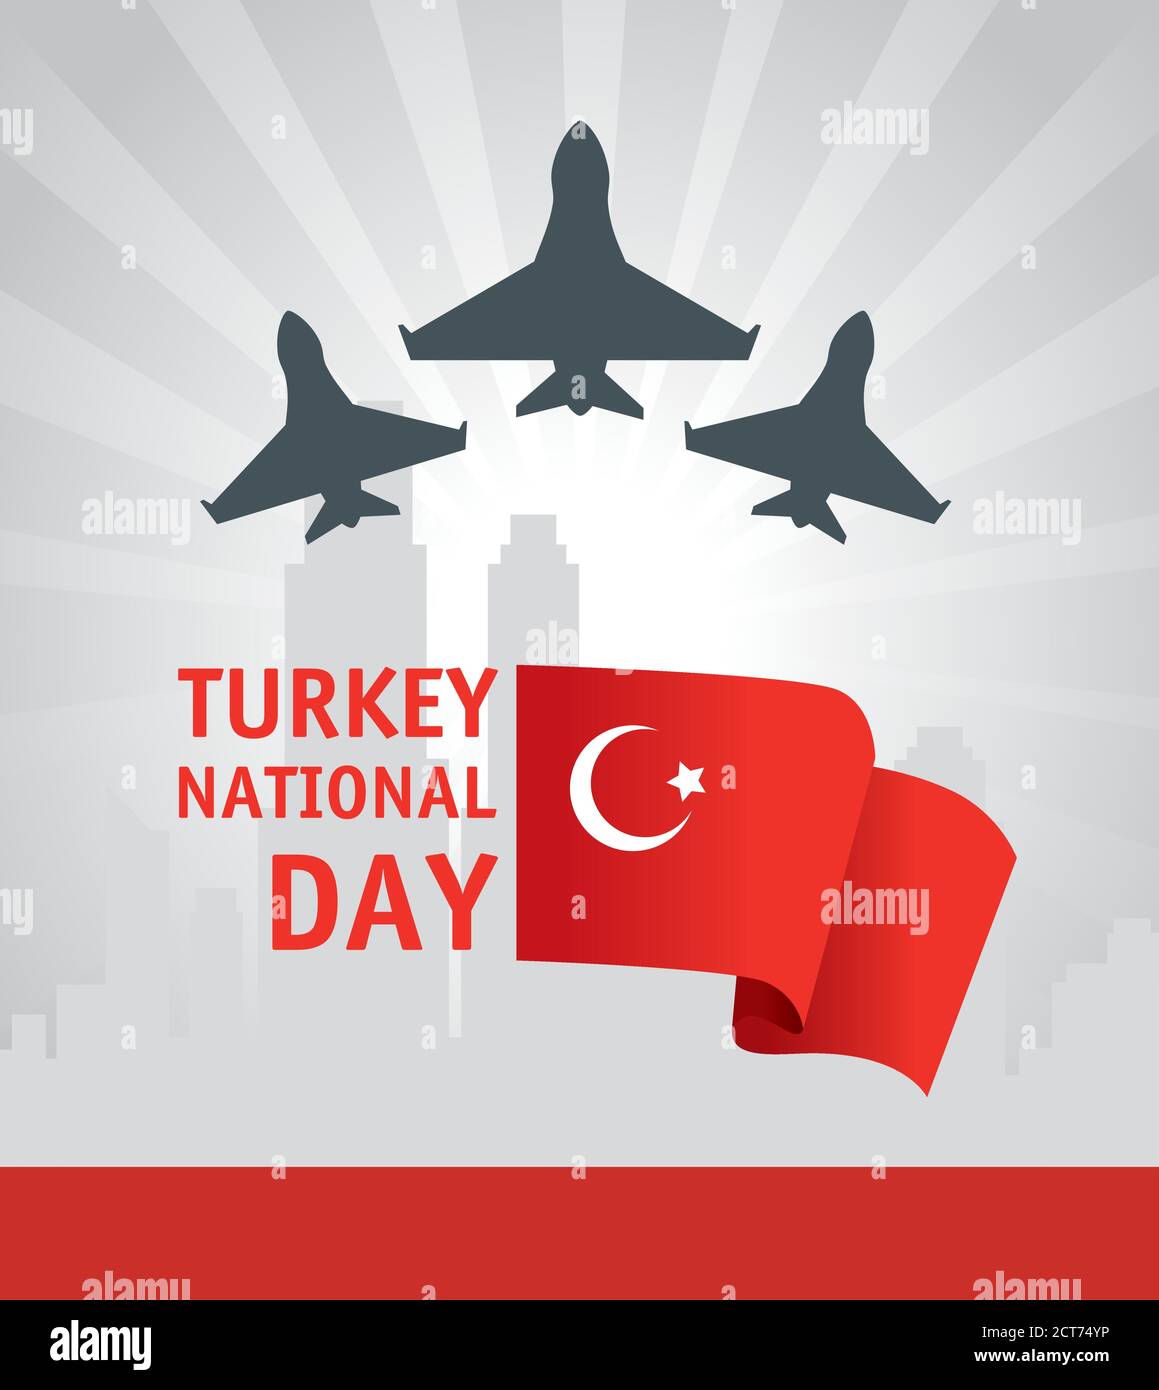 29 octobre jour de la république turquie avec avions de guerre et drapeau Illustration de Vecteur